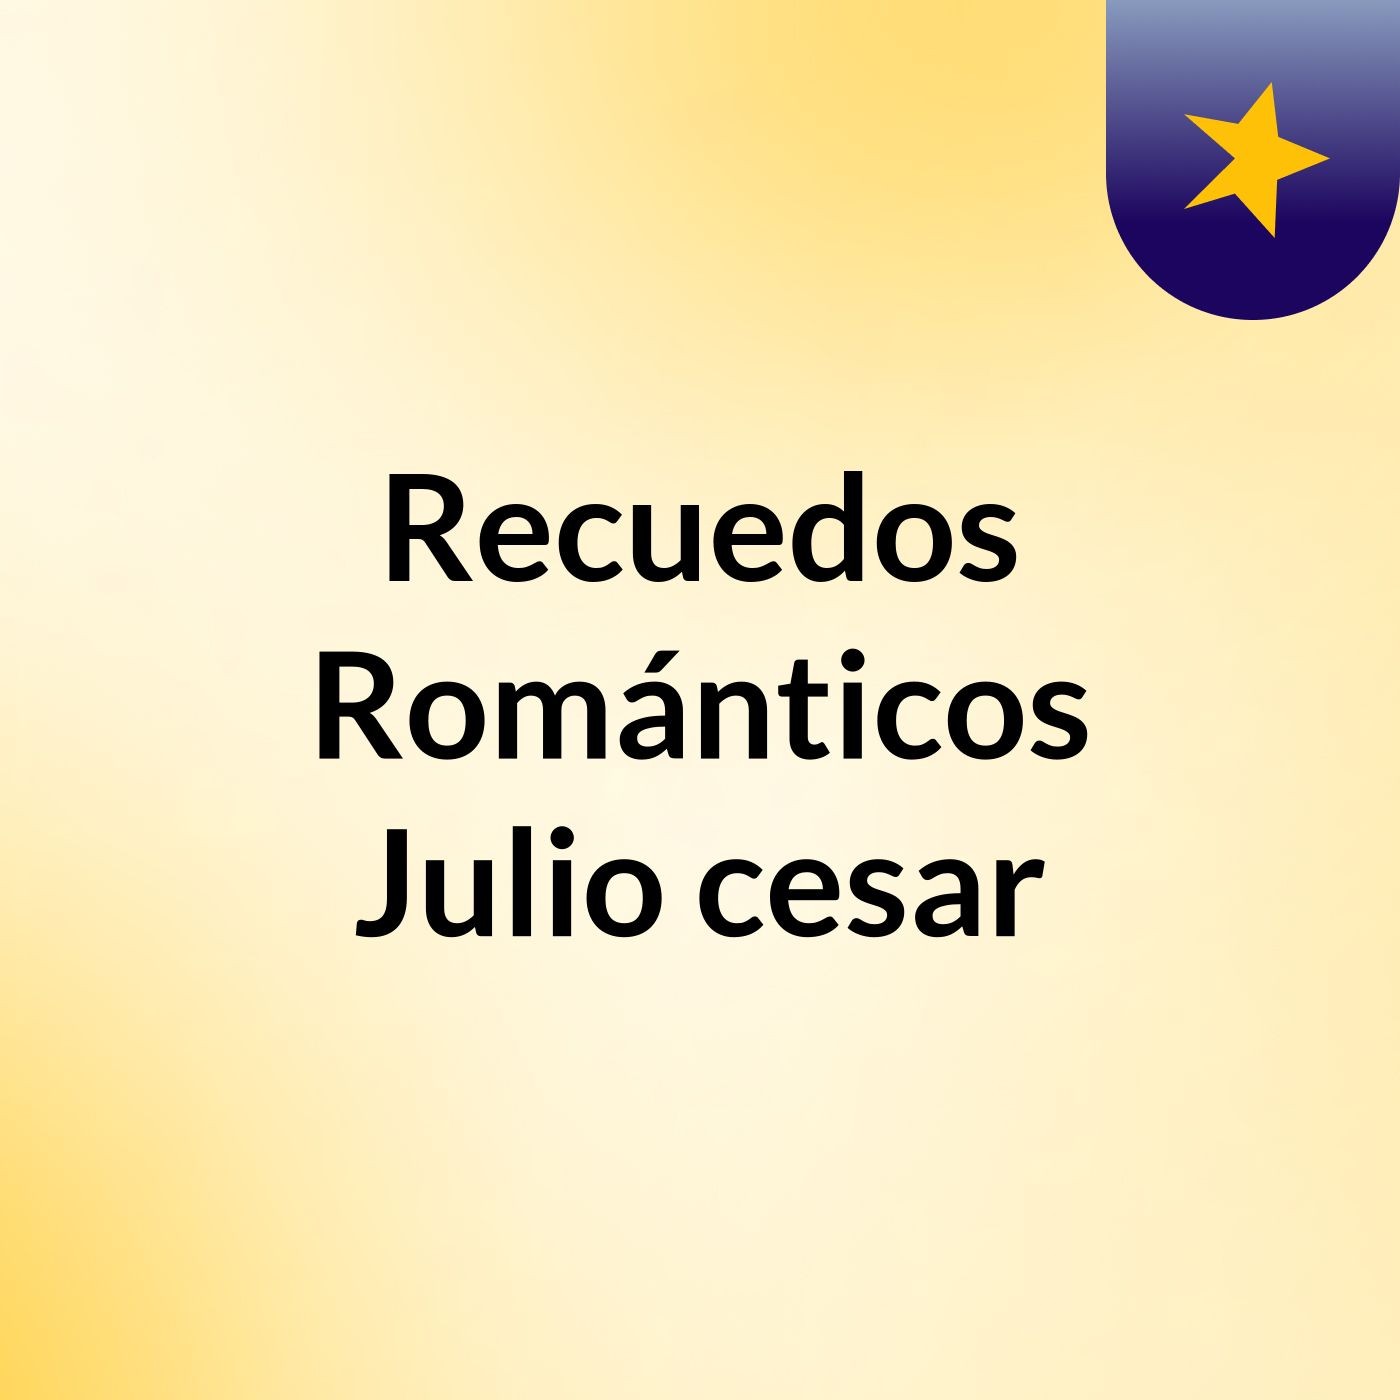 Episodio 3 - Recuedos Románticos Julio cesar